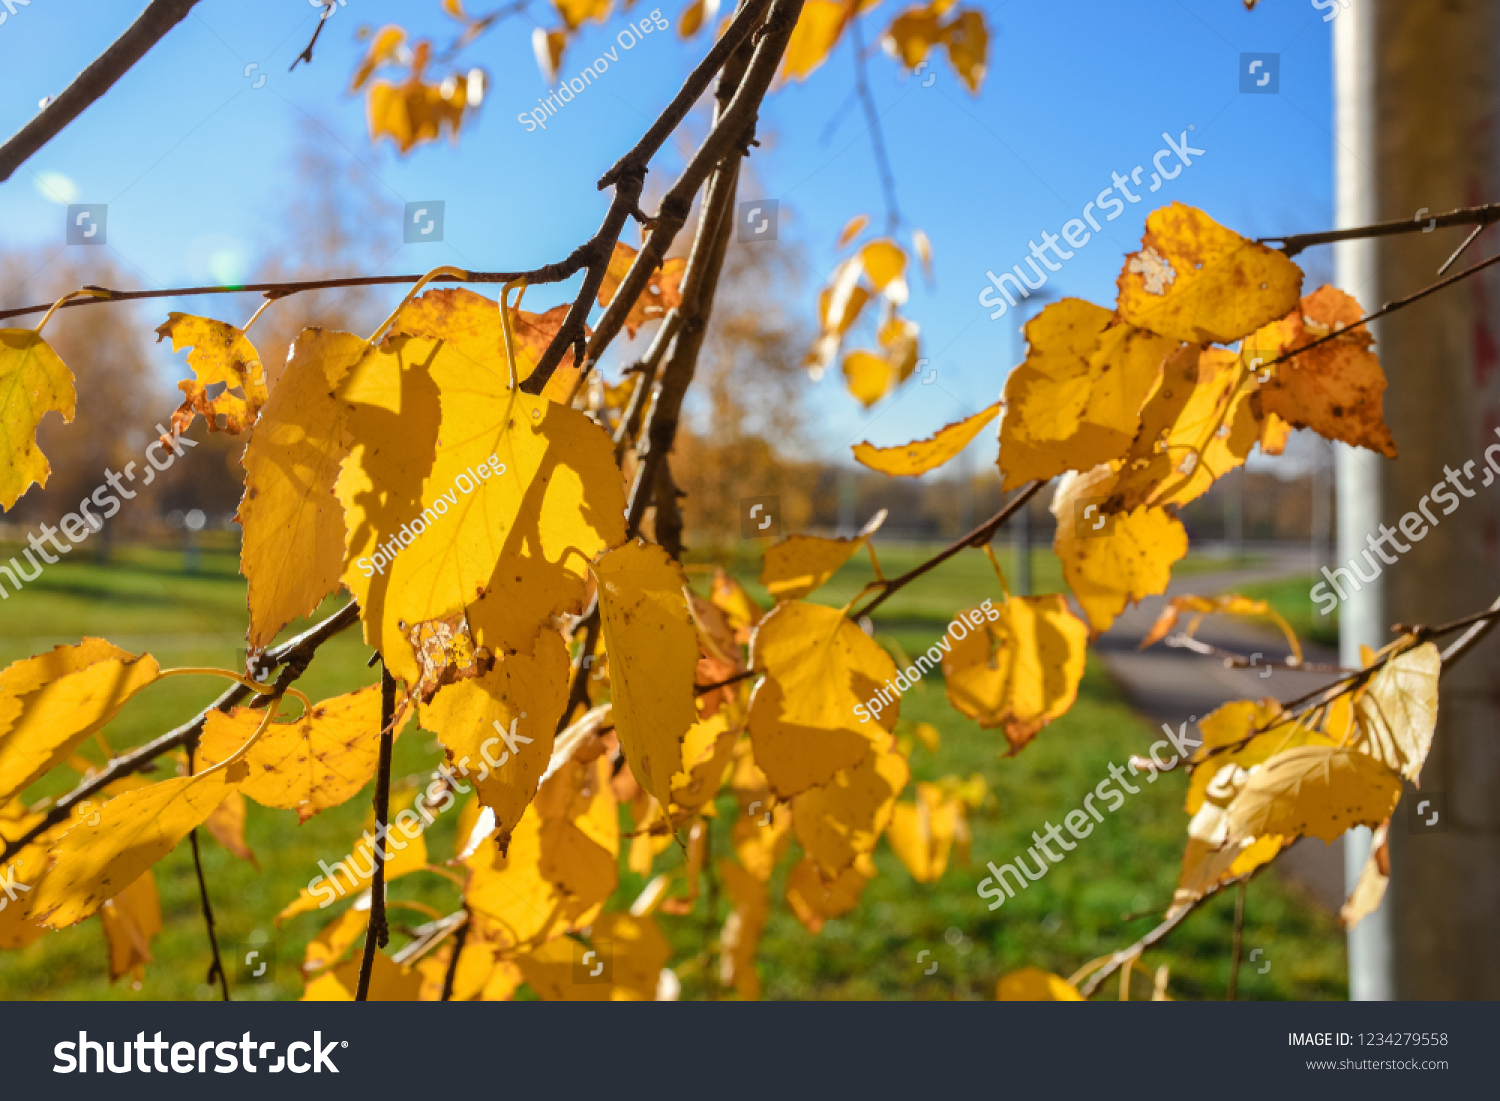 Close-up of yellowed foliage, yellowed birch foliage, autumn foliage #1234279558